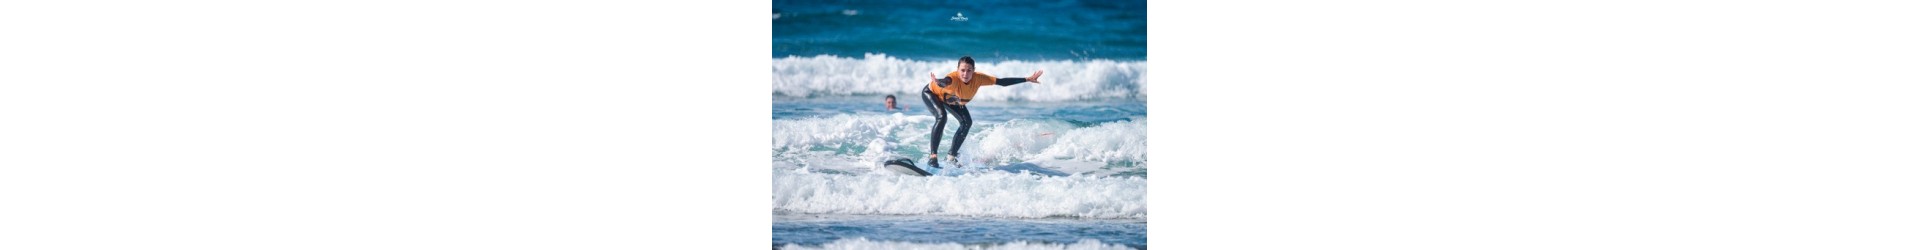 Surfing: doskonałe fale, ciepła woda i piękne plaże. Raj dla surferów!